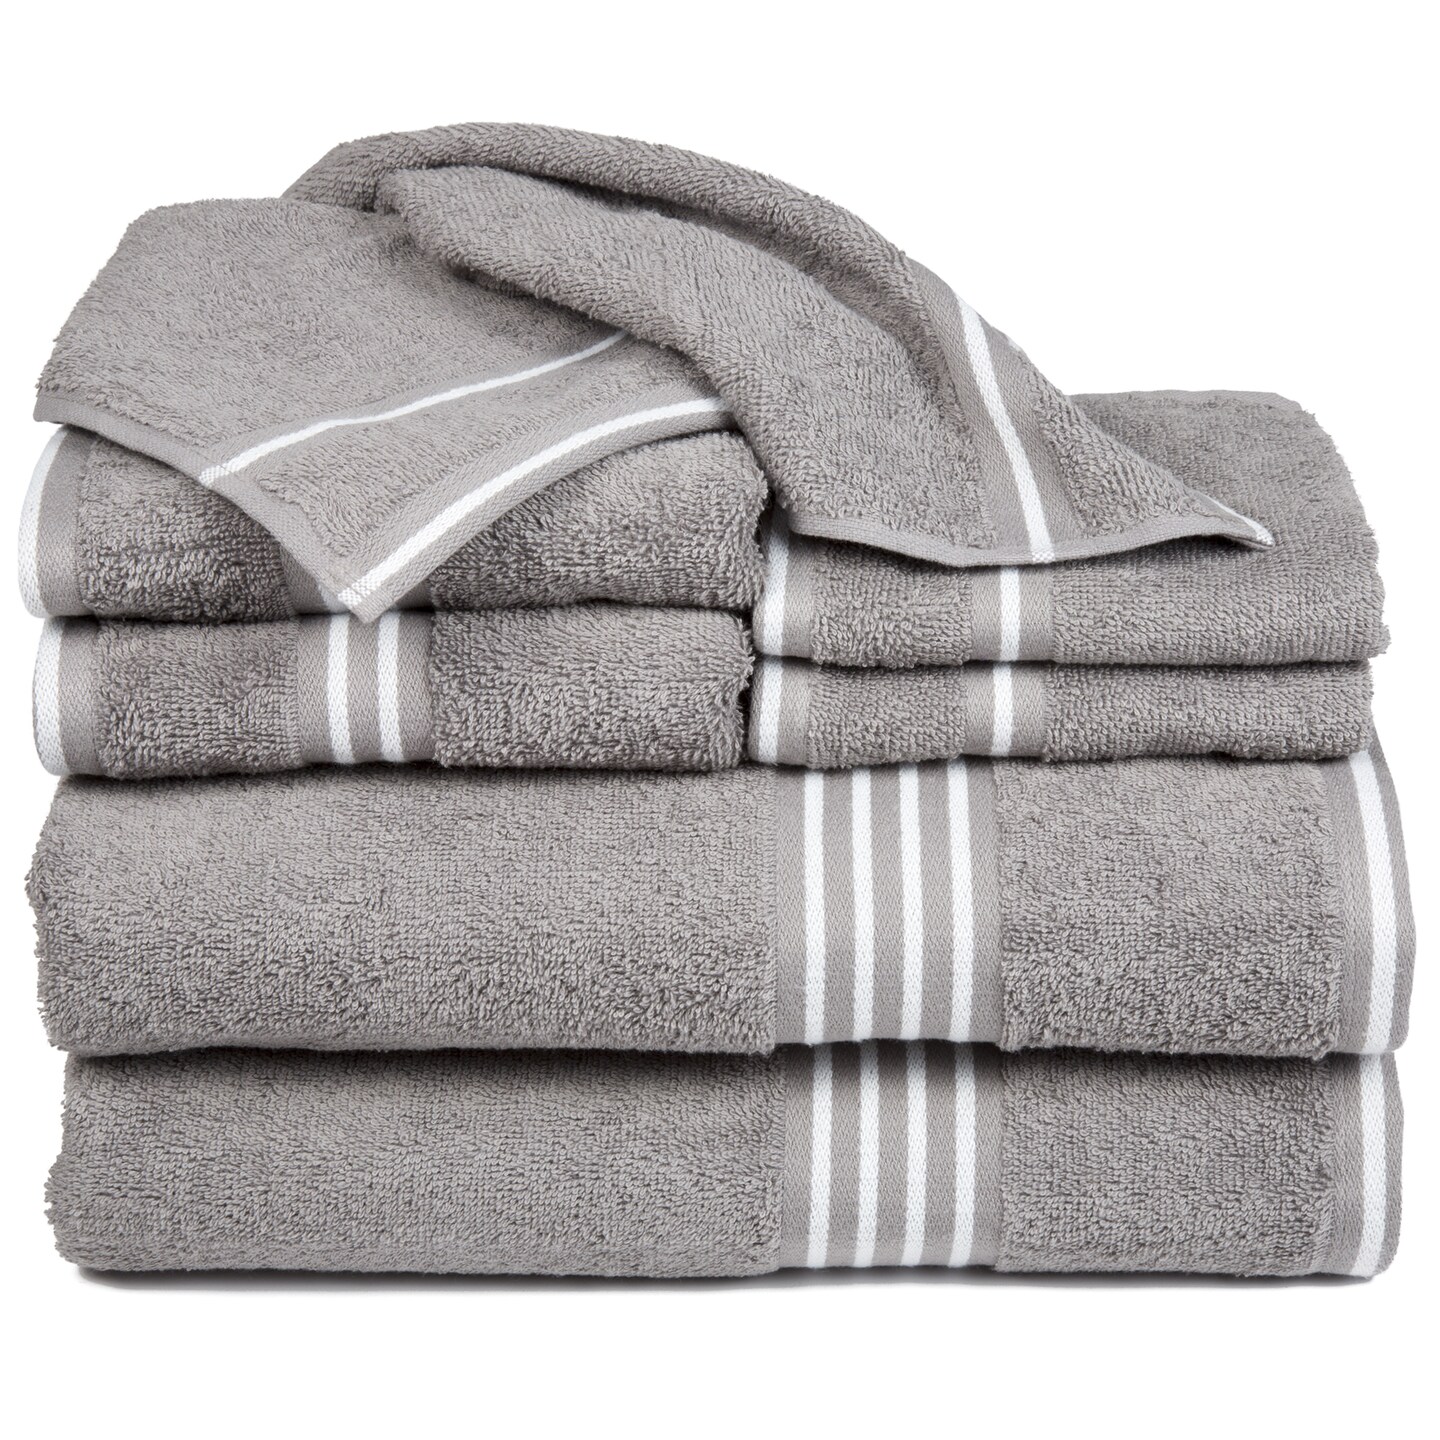 Lavish Home 8 Piece 100% Cotton Soft Towel Set